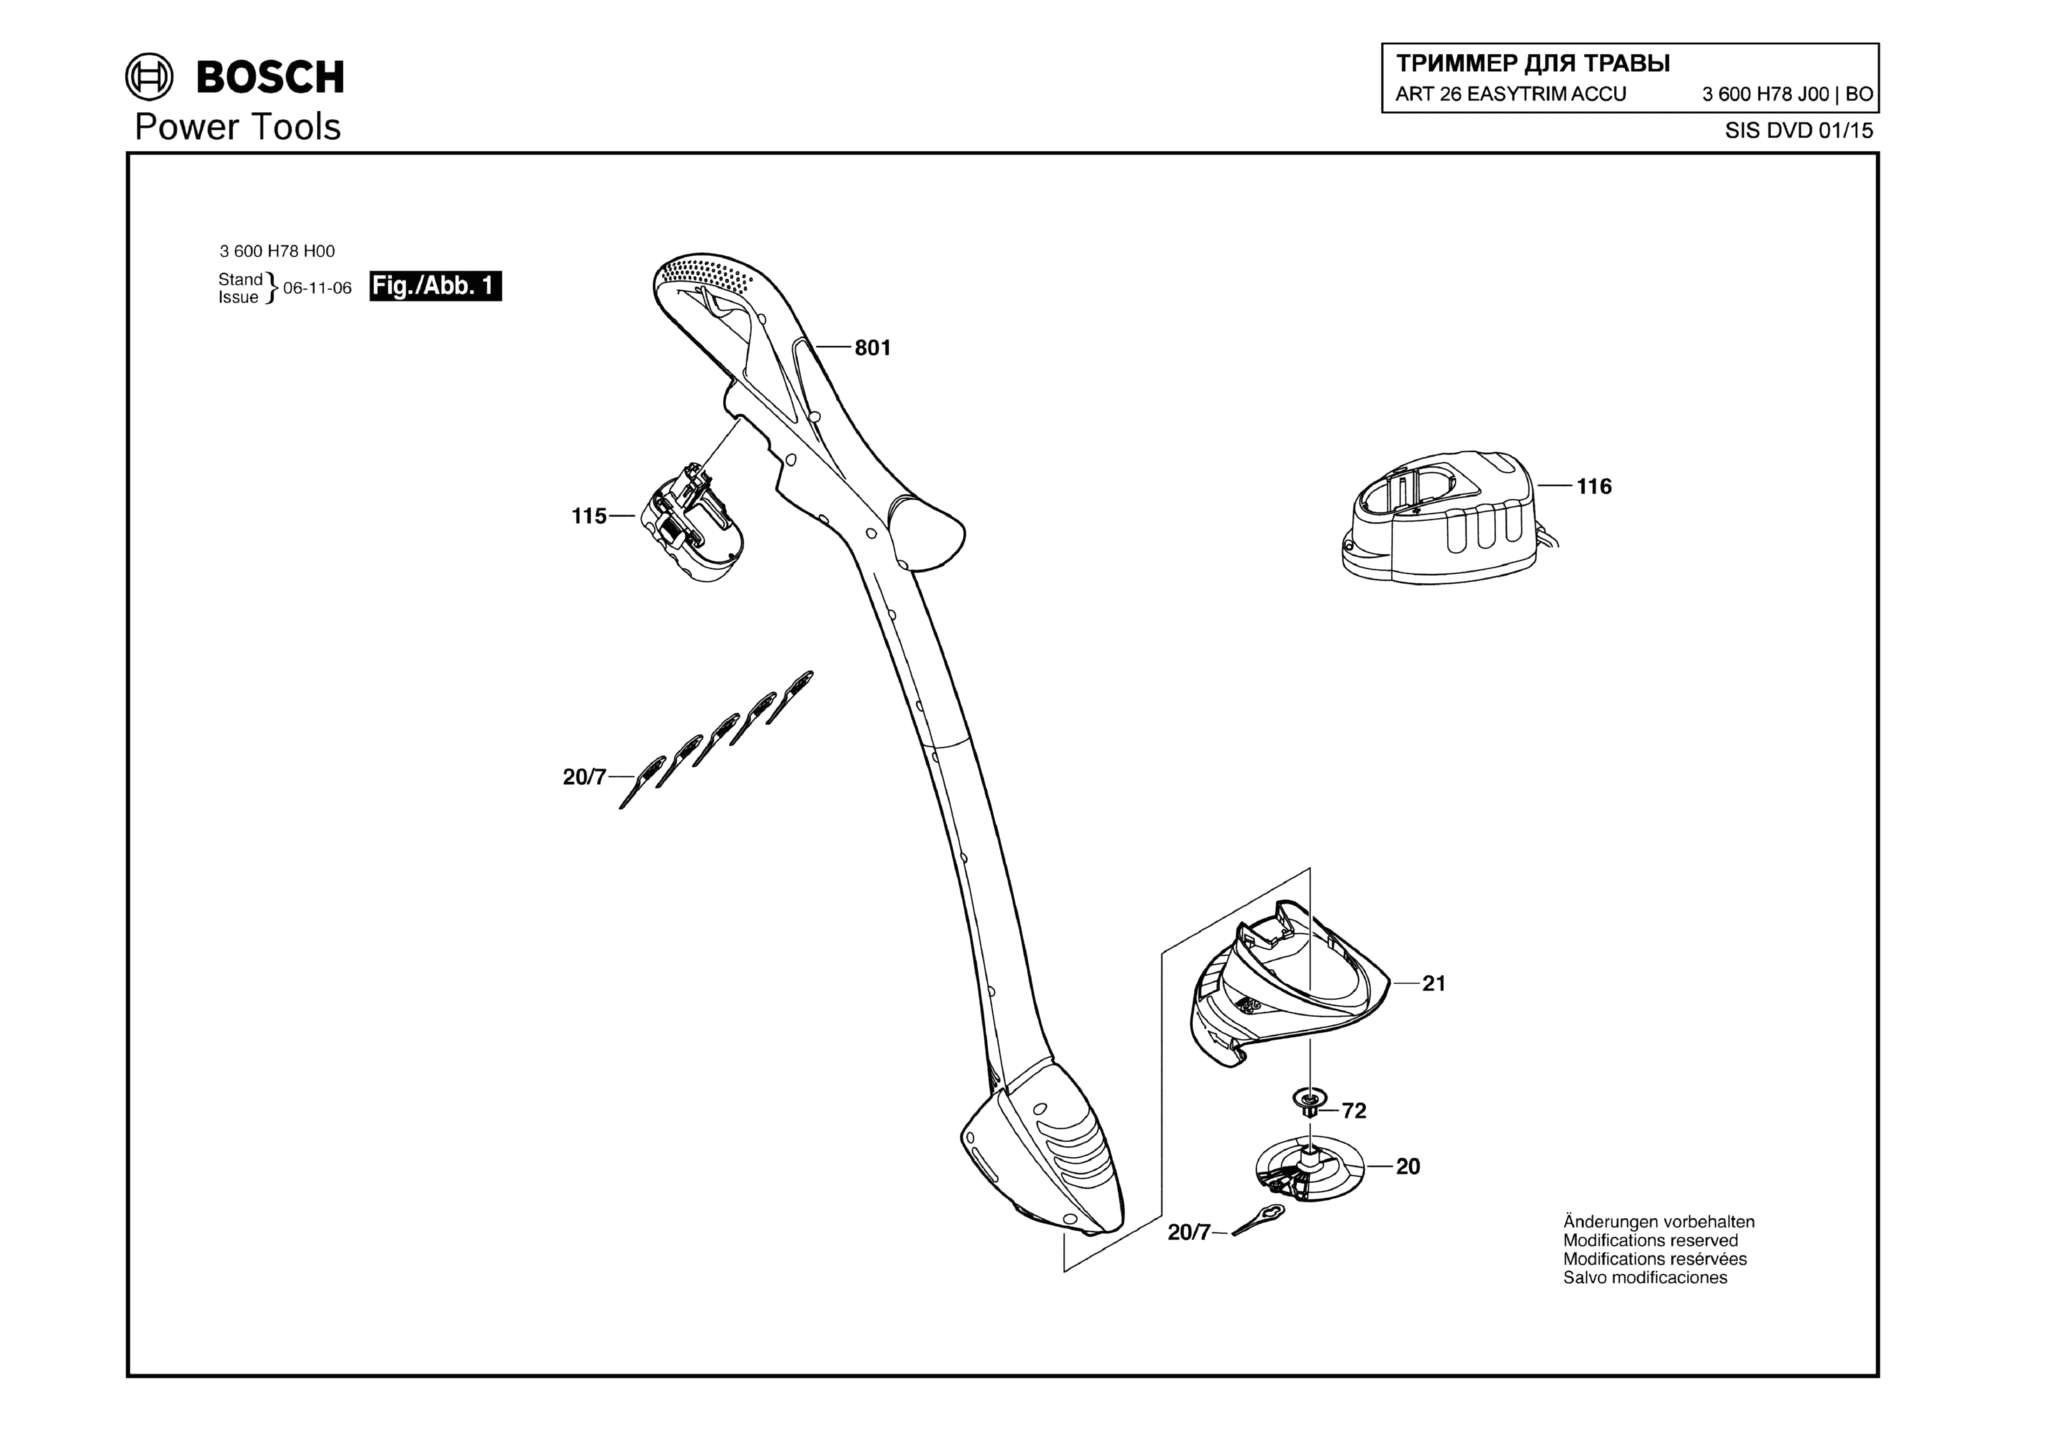 Запчасти, схема и деталировка Bosch ART 26 EASYTRIM ACCU (ТИП 3600H78J00)